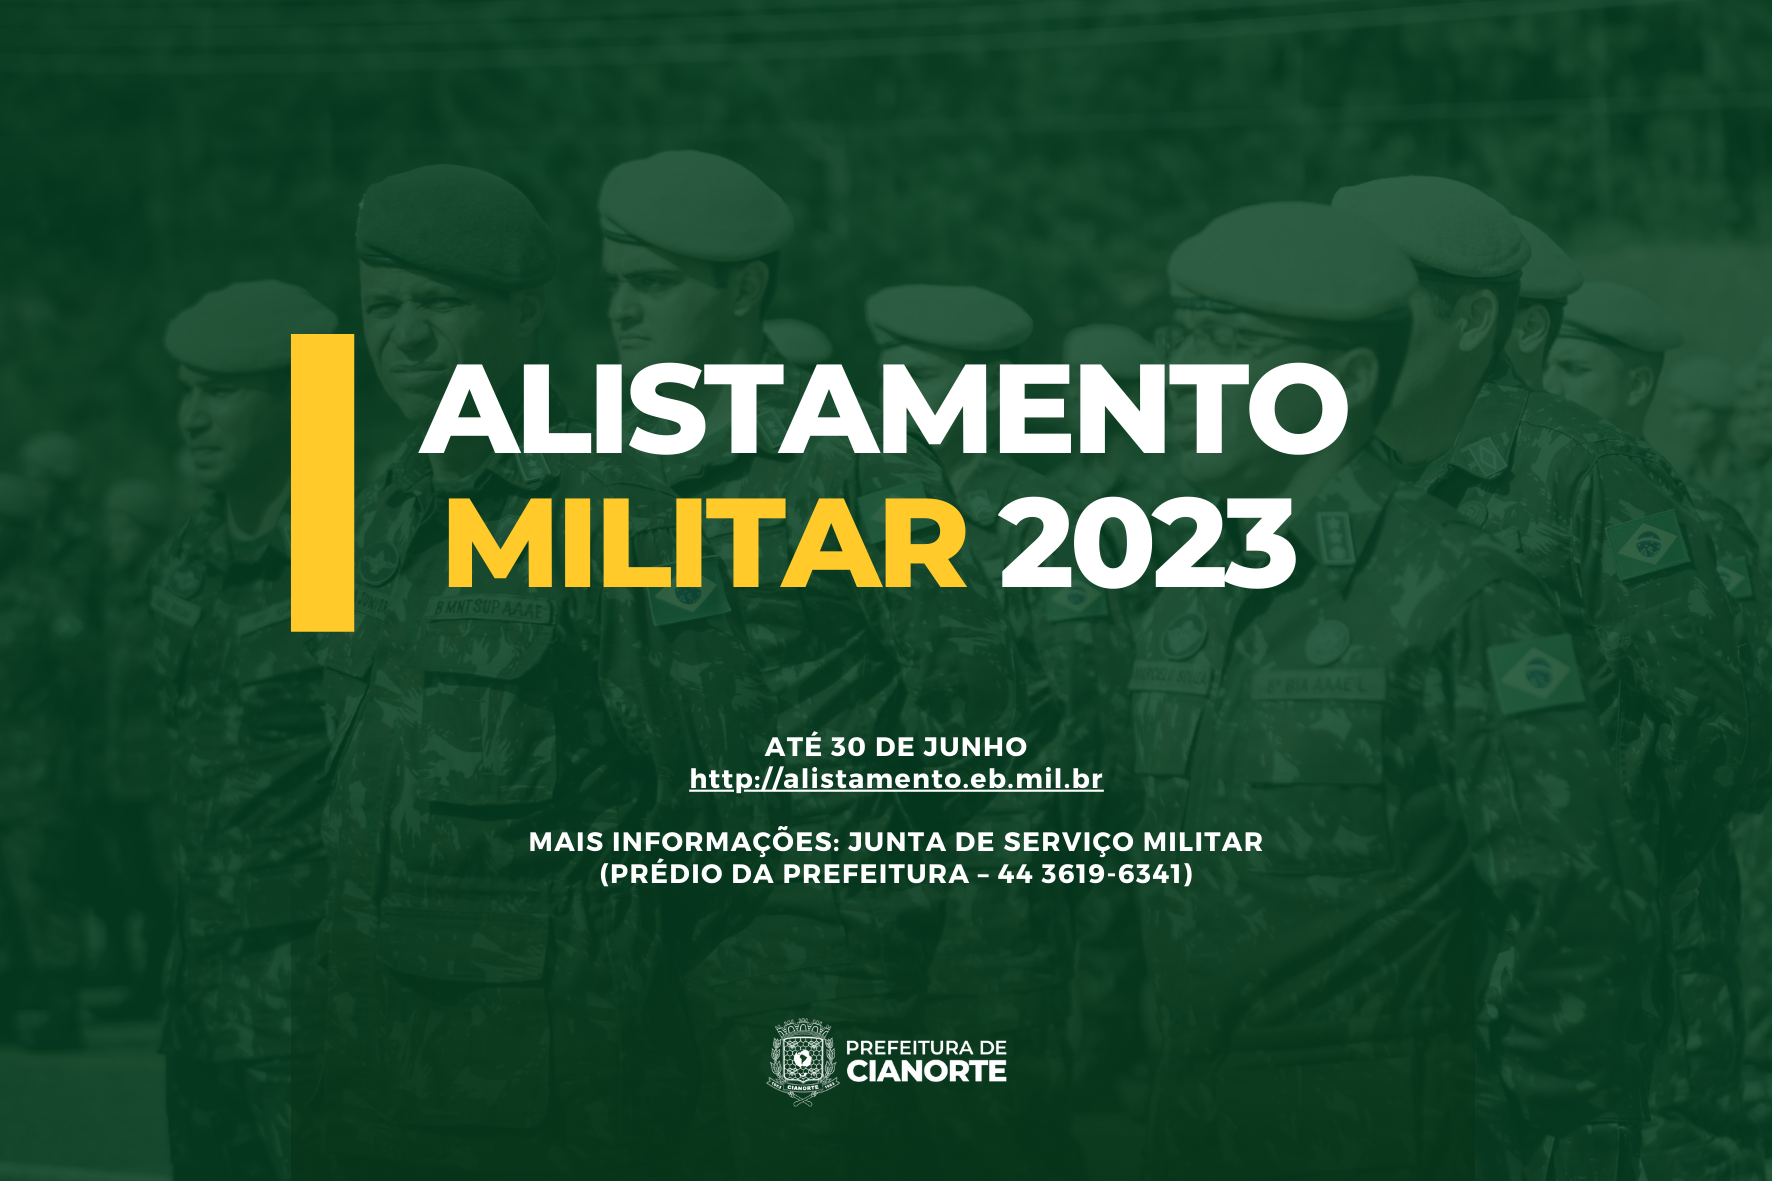 PMRB - ALISTAMENTO MILITAR 2022